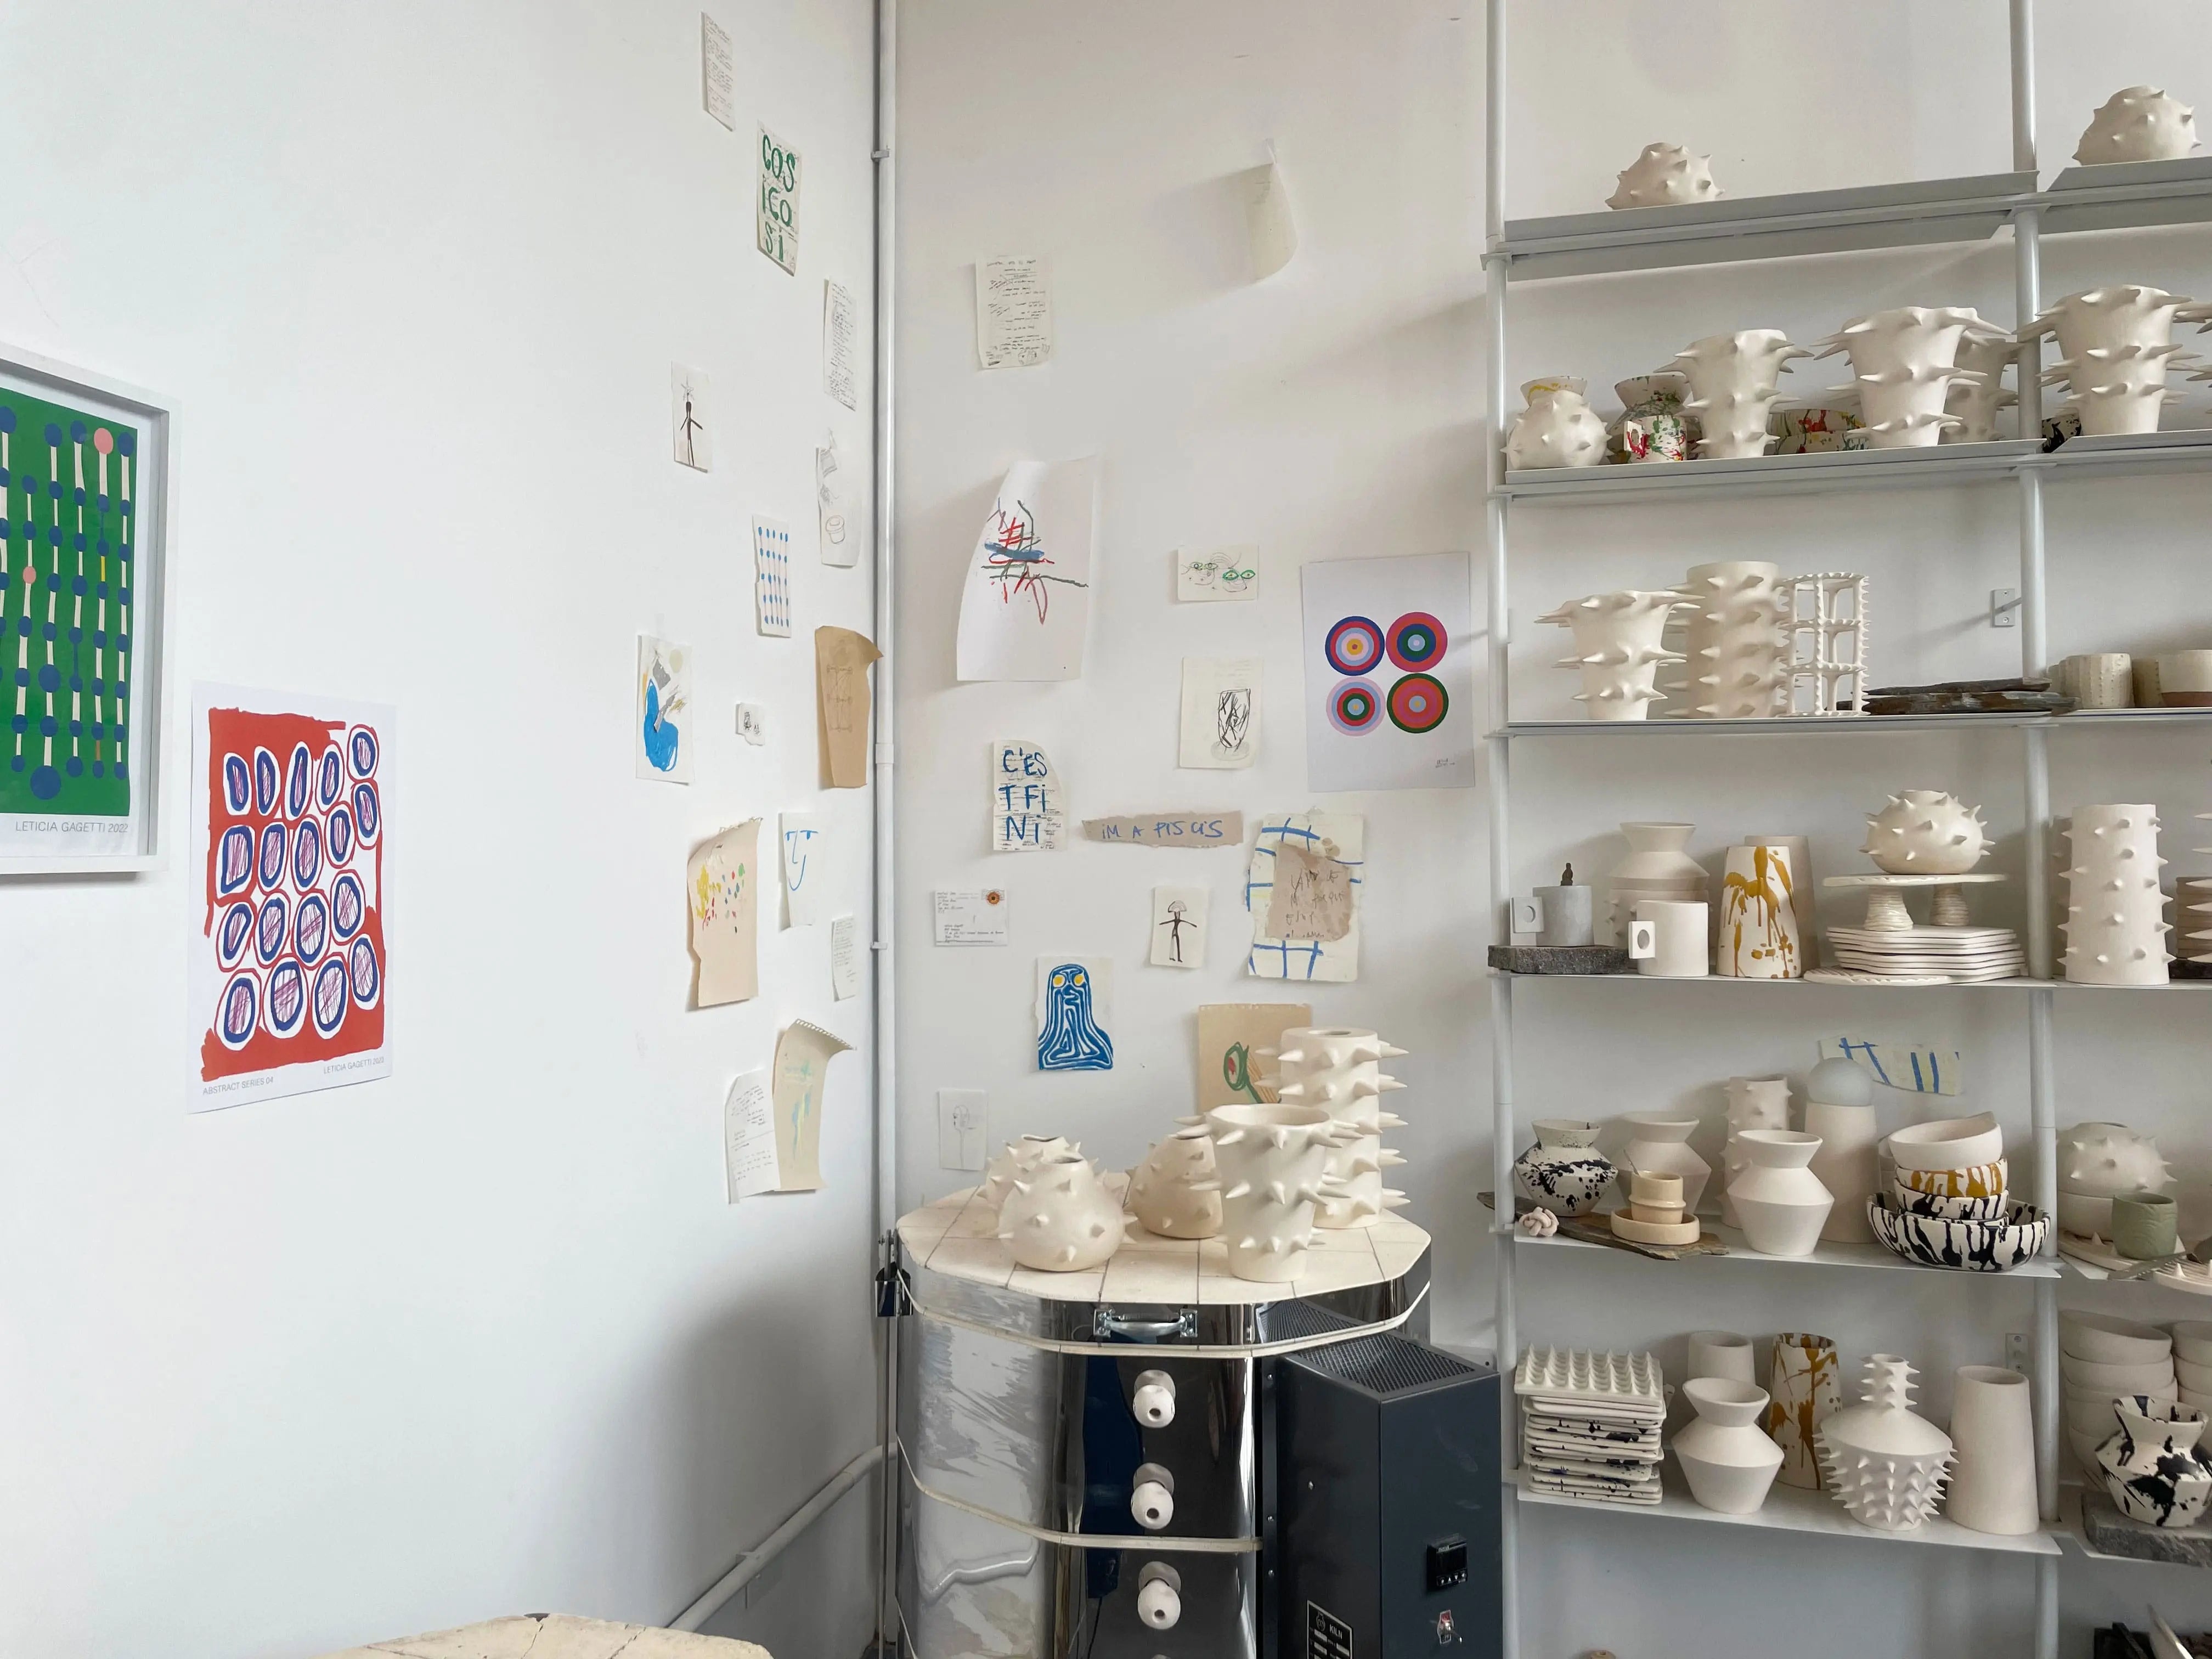  Inside view of OWO Ceramics, a Buenos Aires ceramic studio